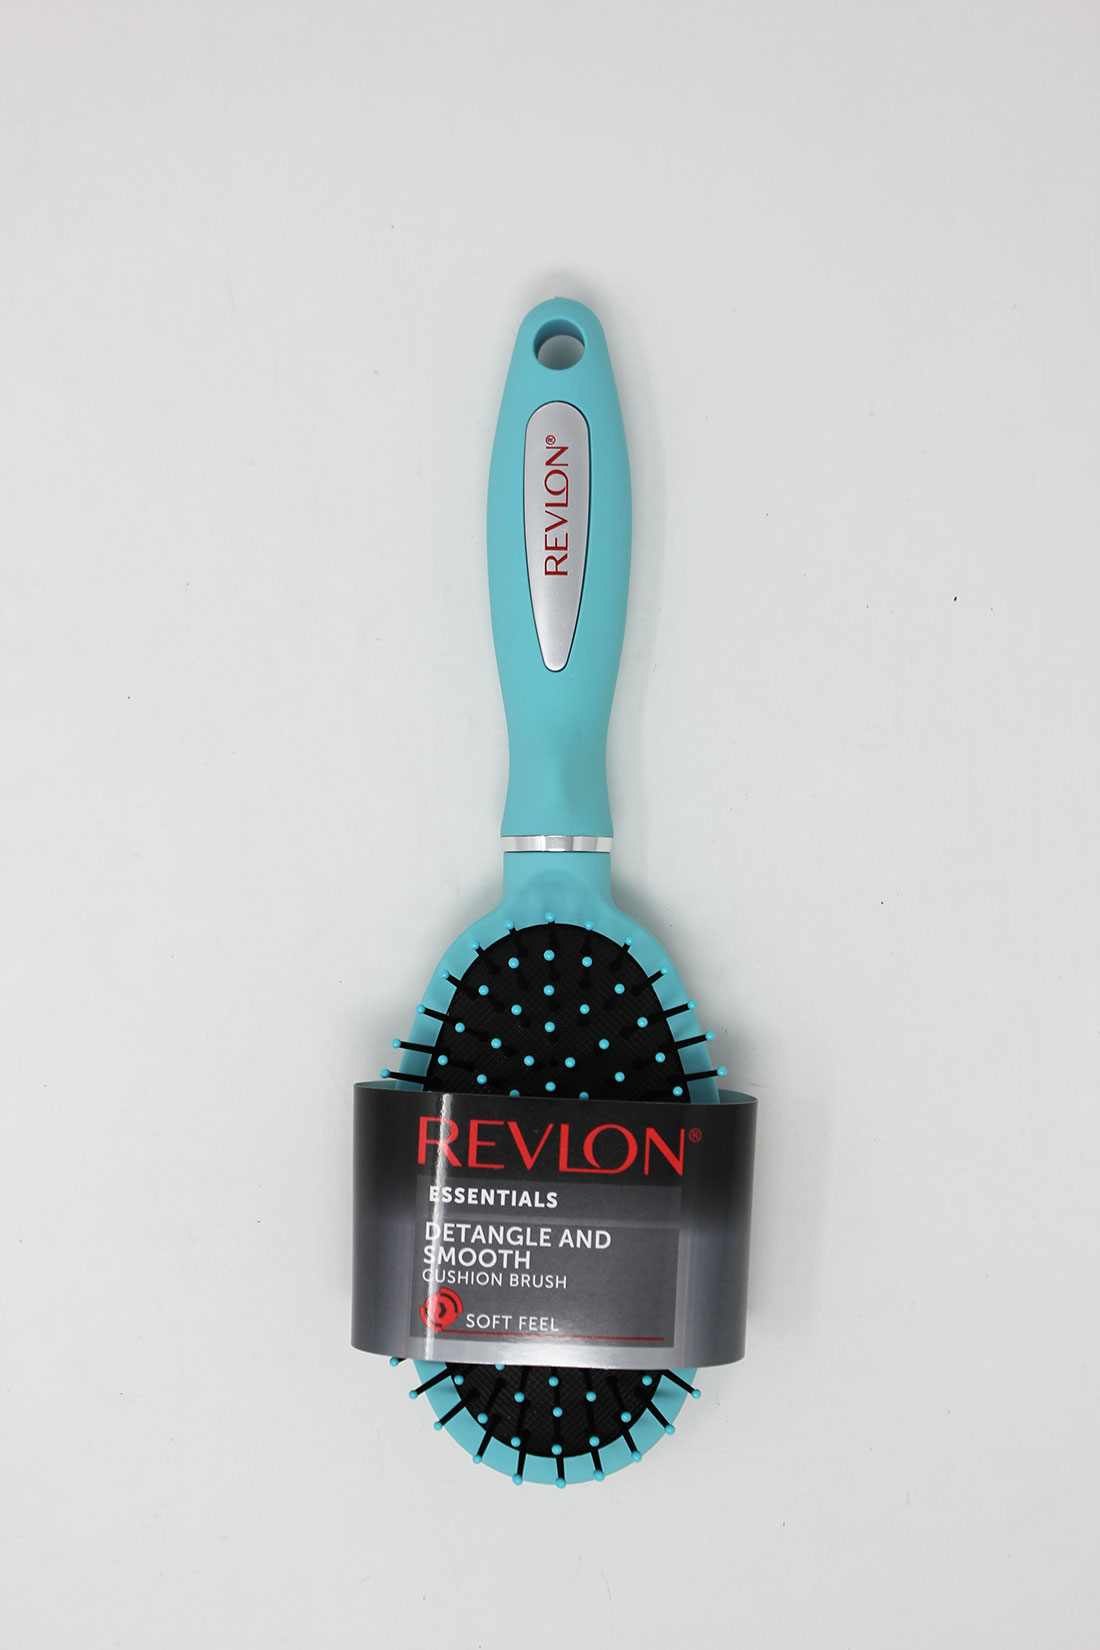 Revlon essentials signature series cusion brush mint